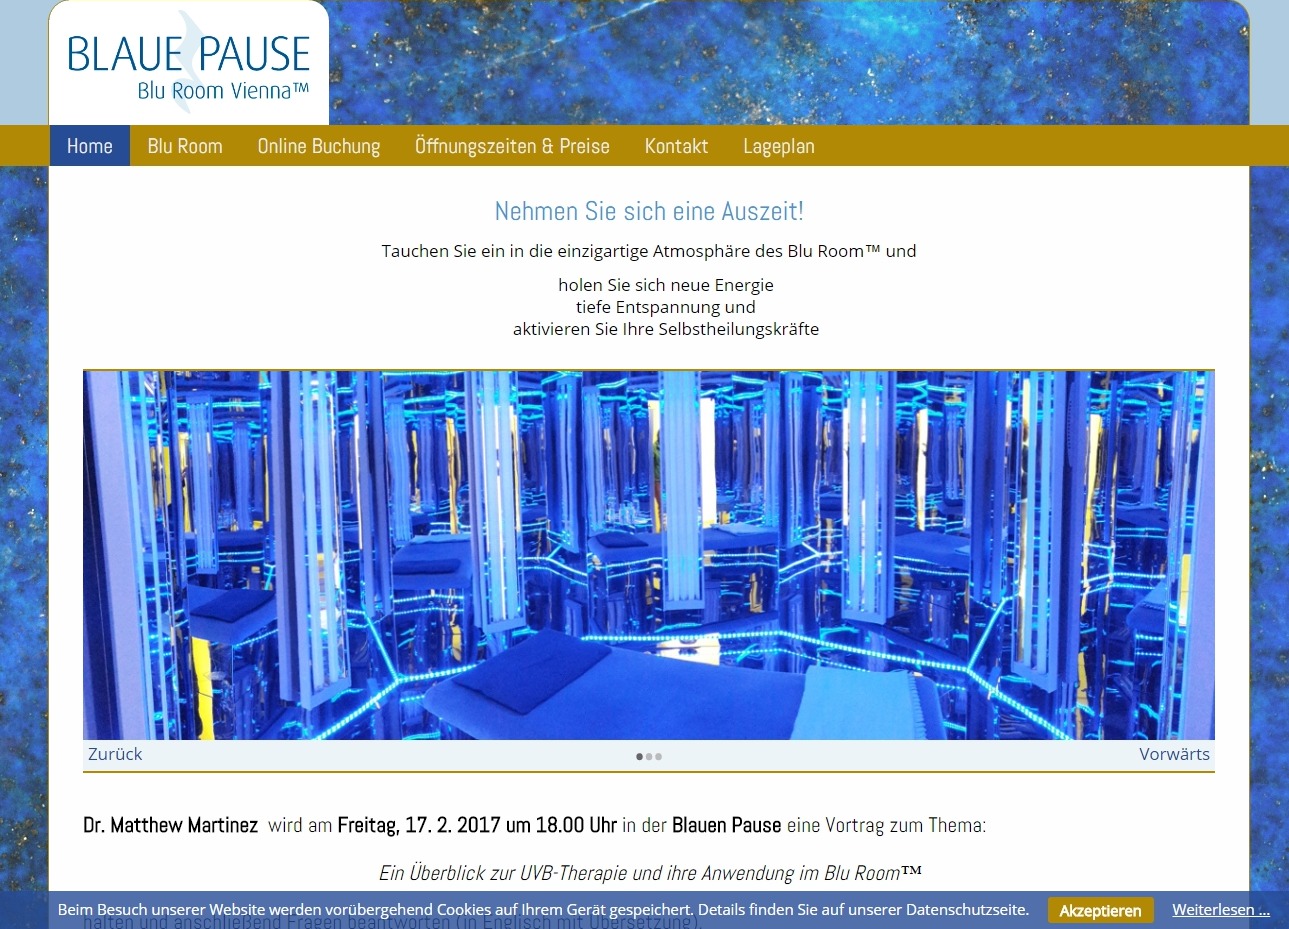 Website für Blaue Pause, Blu Room Vienna